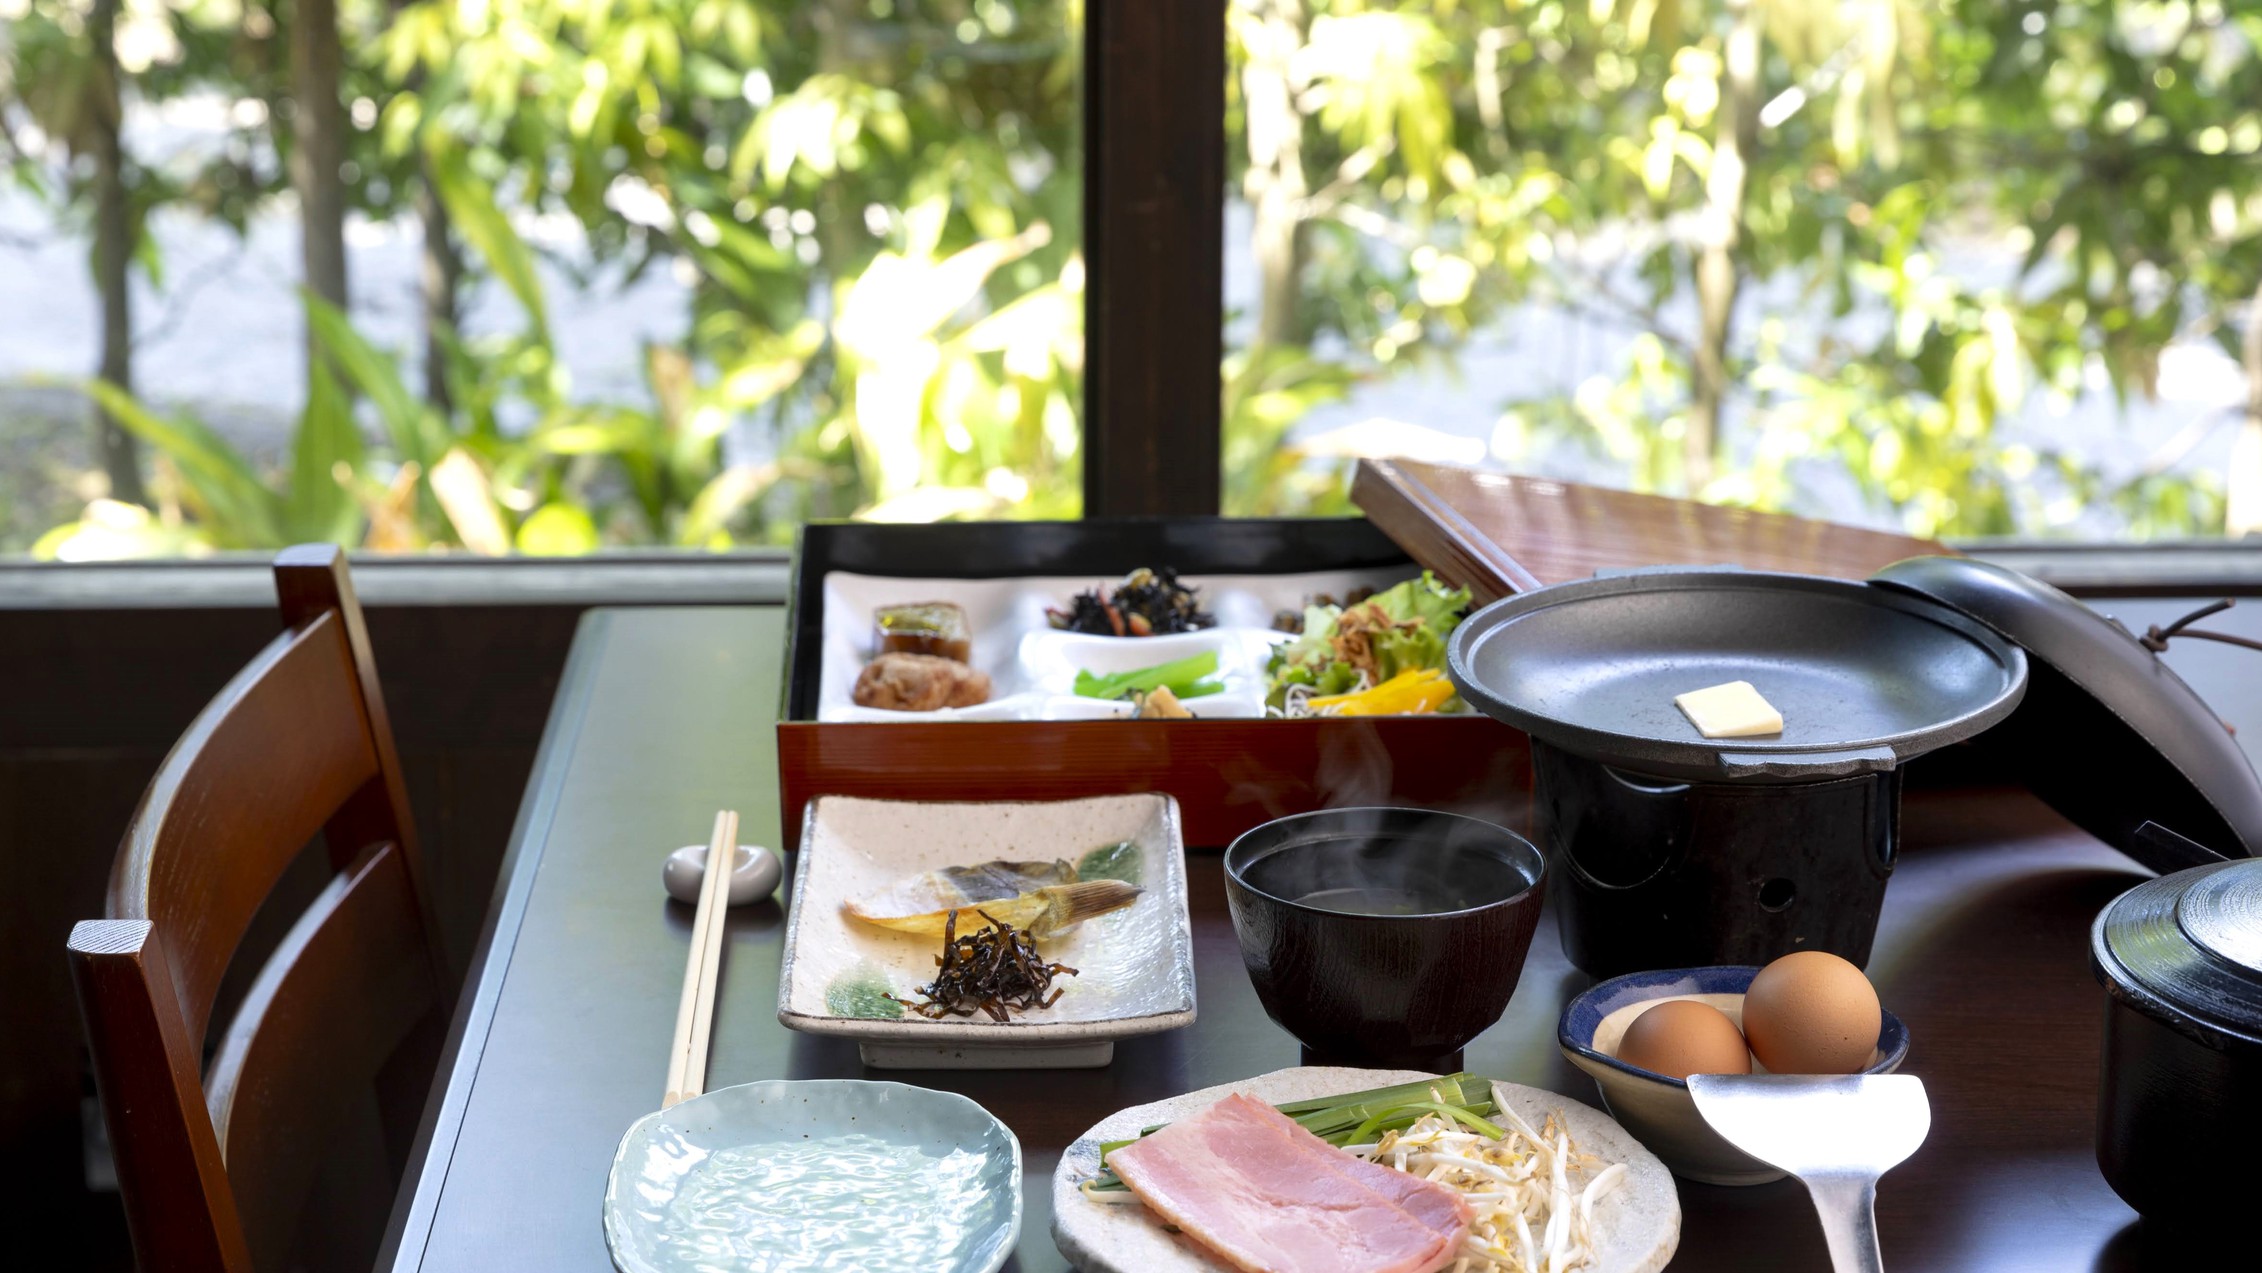 大切な一日のはじまりに、健康でおいしい和食をご用意しております